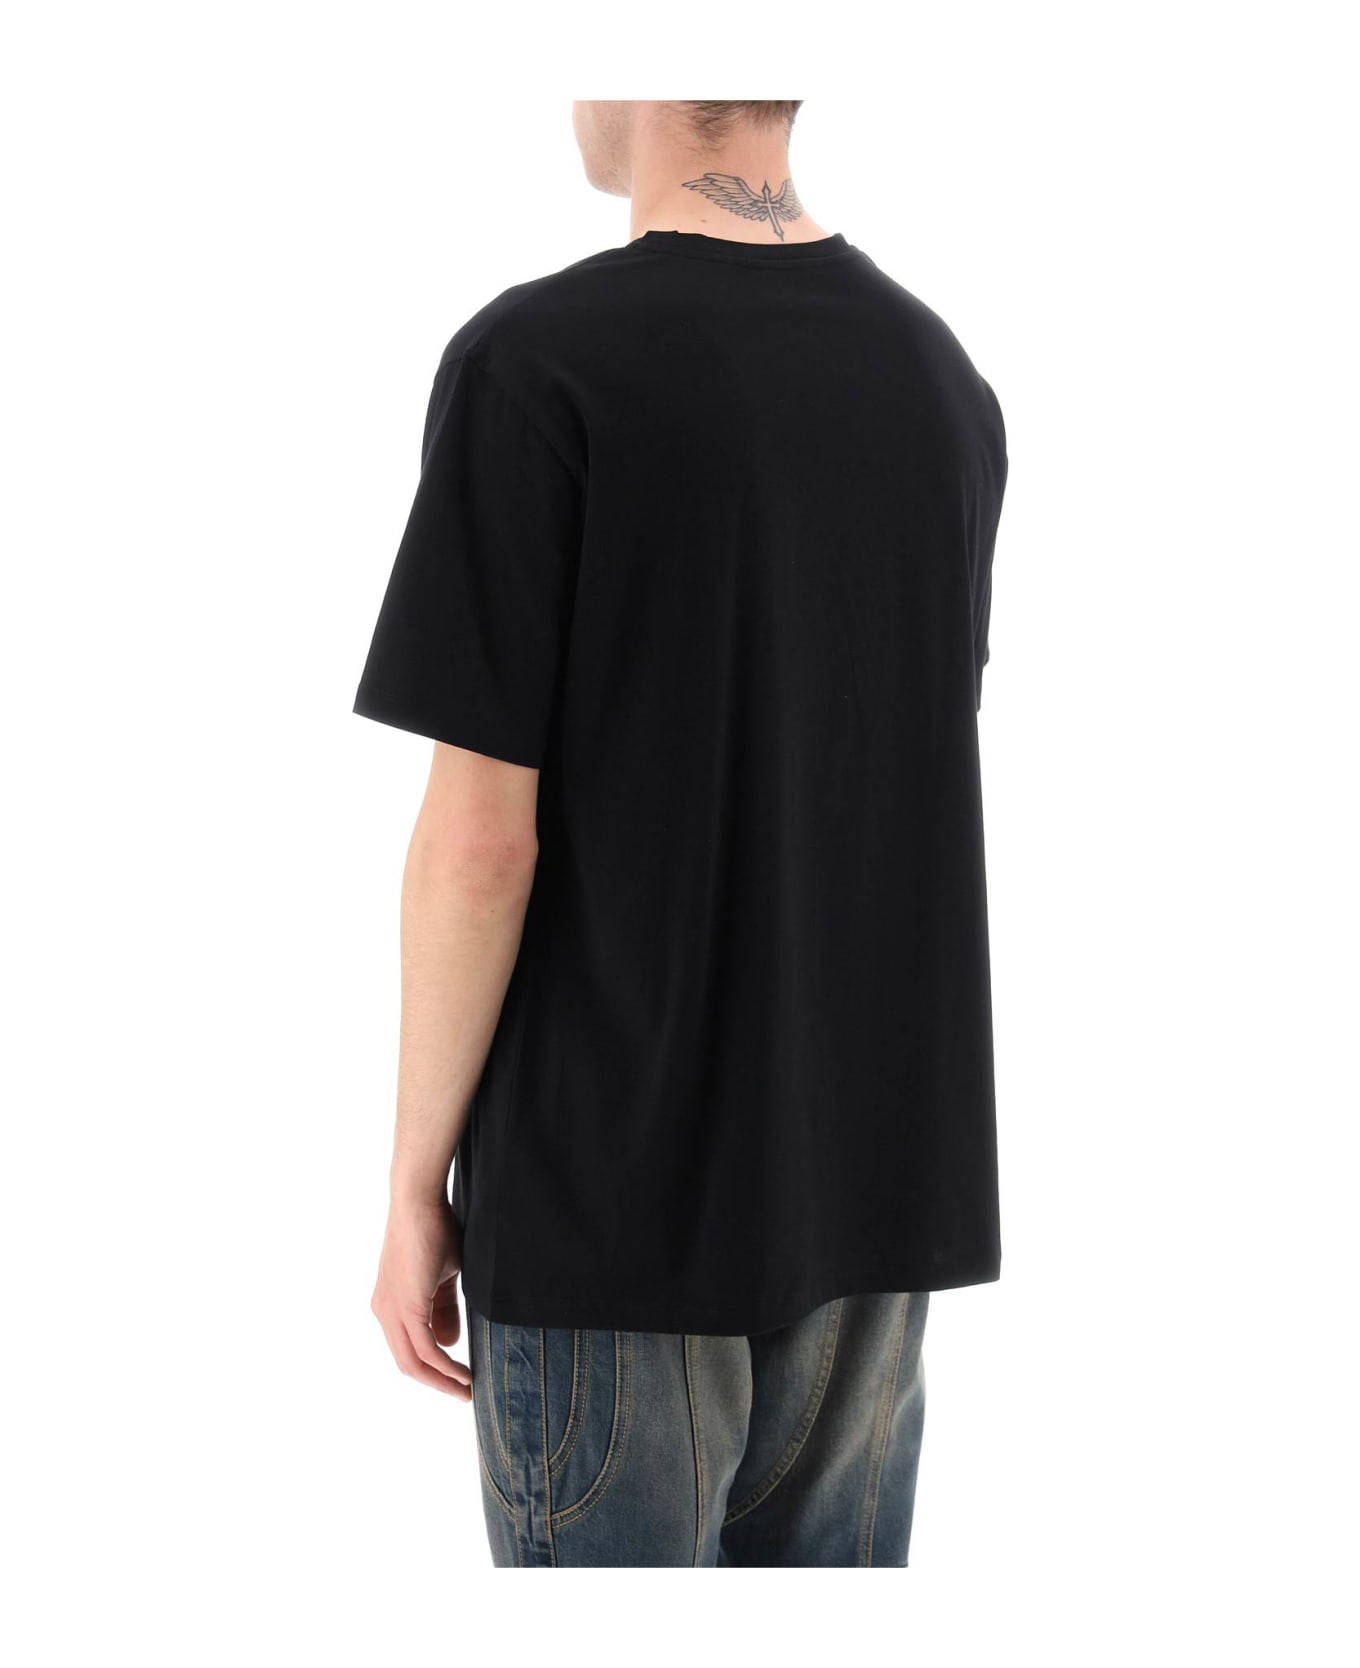 Balmain Black Cotton T-shirt - Noir/blanc シャツ